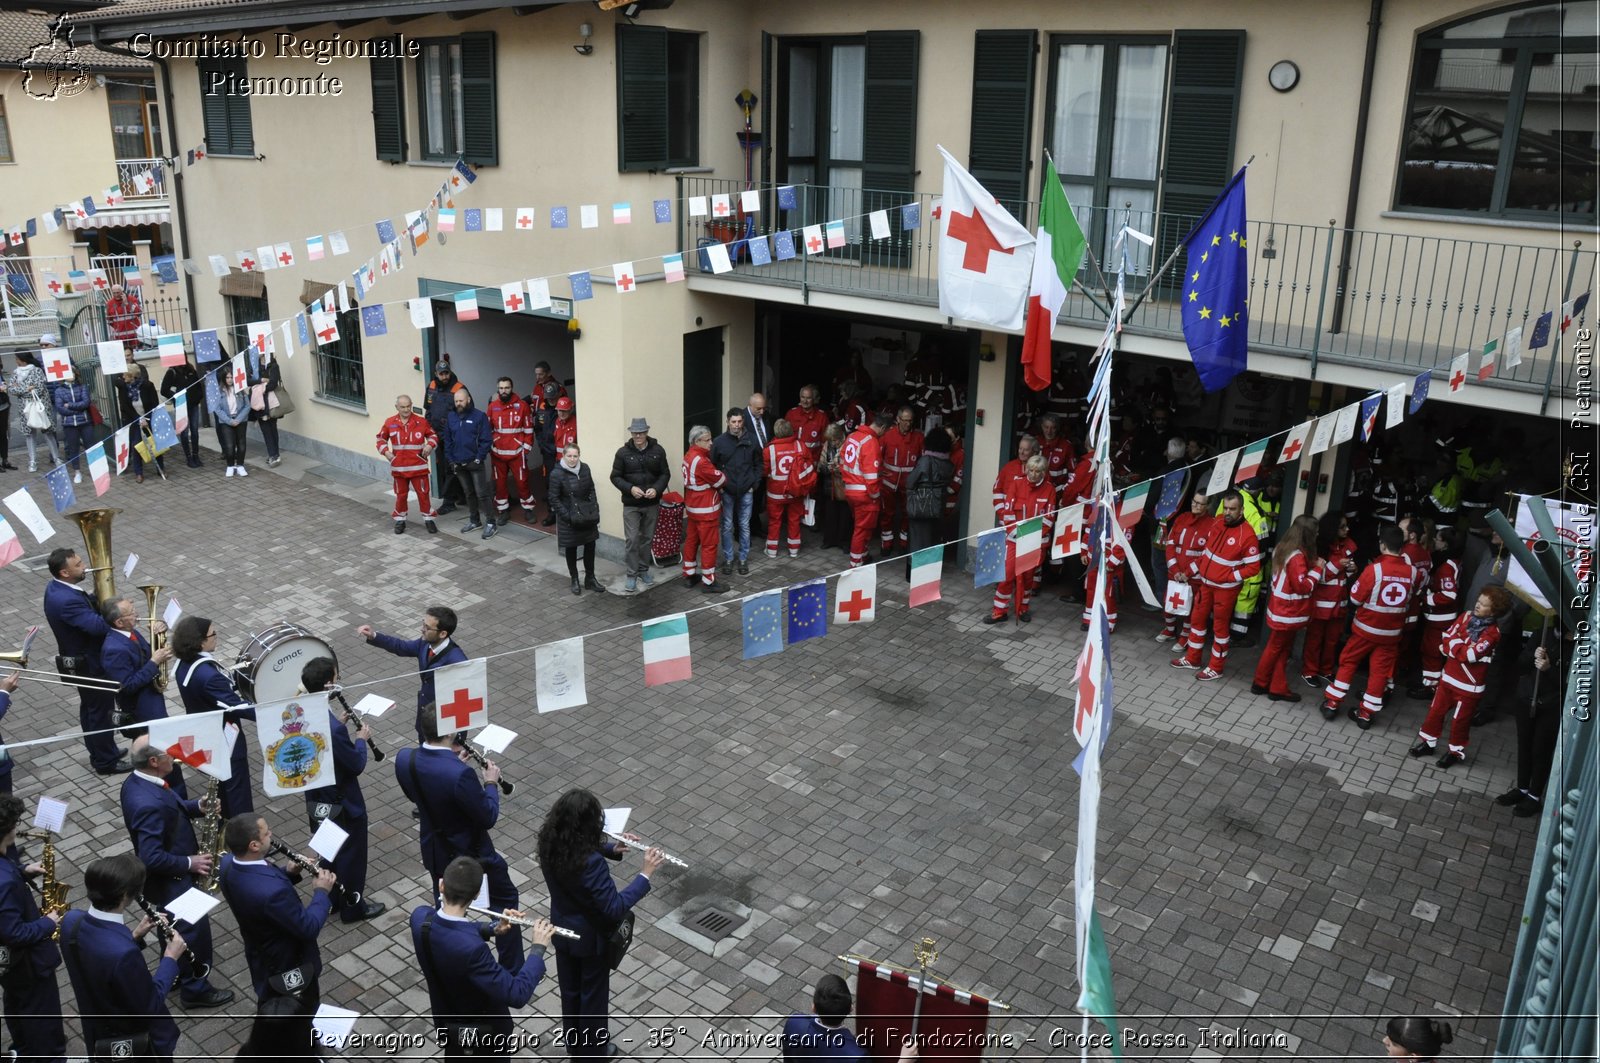 Peveragno 5 Maggio 2019 - 35 Anniversario di Fondazione - Croce Rossa Italiana - Comitato Regionale del Piemonte